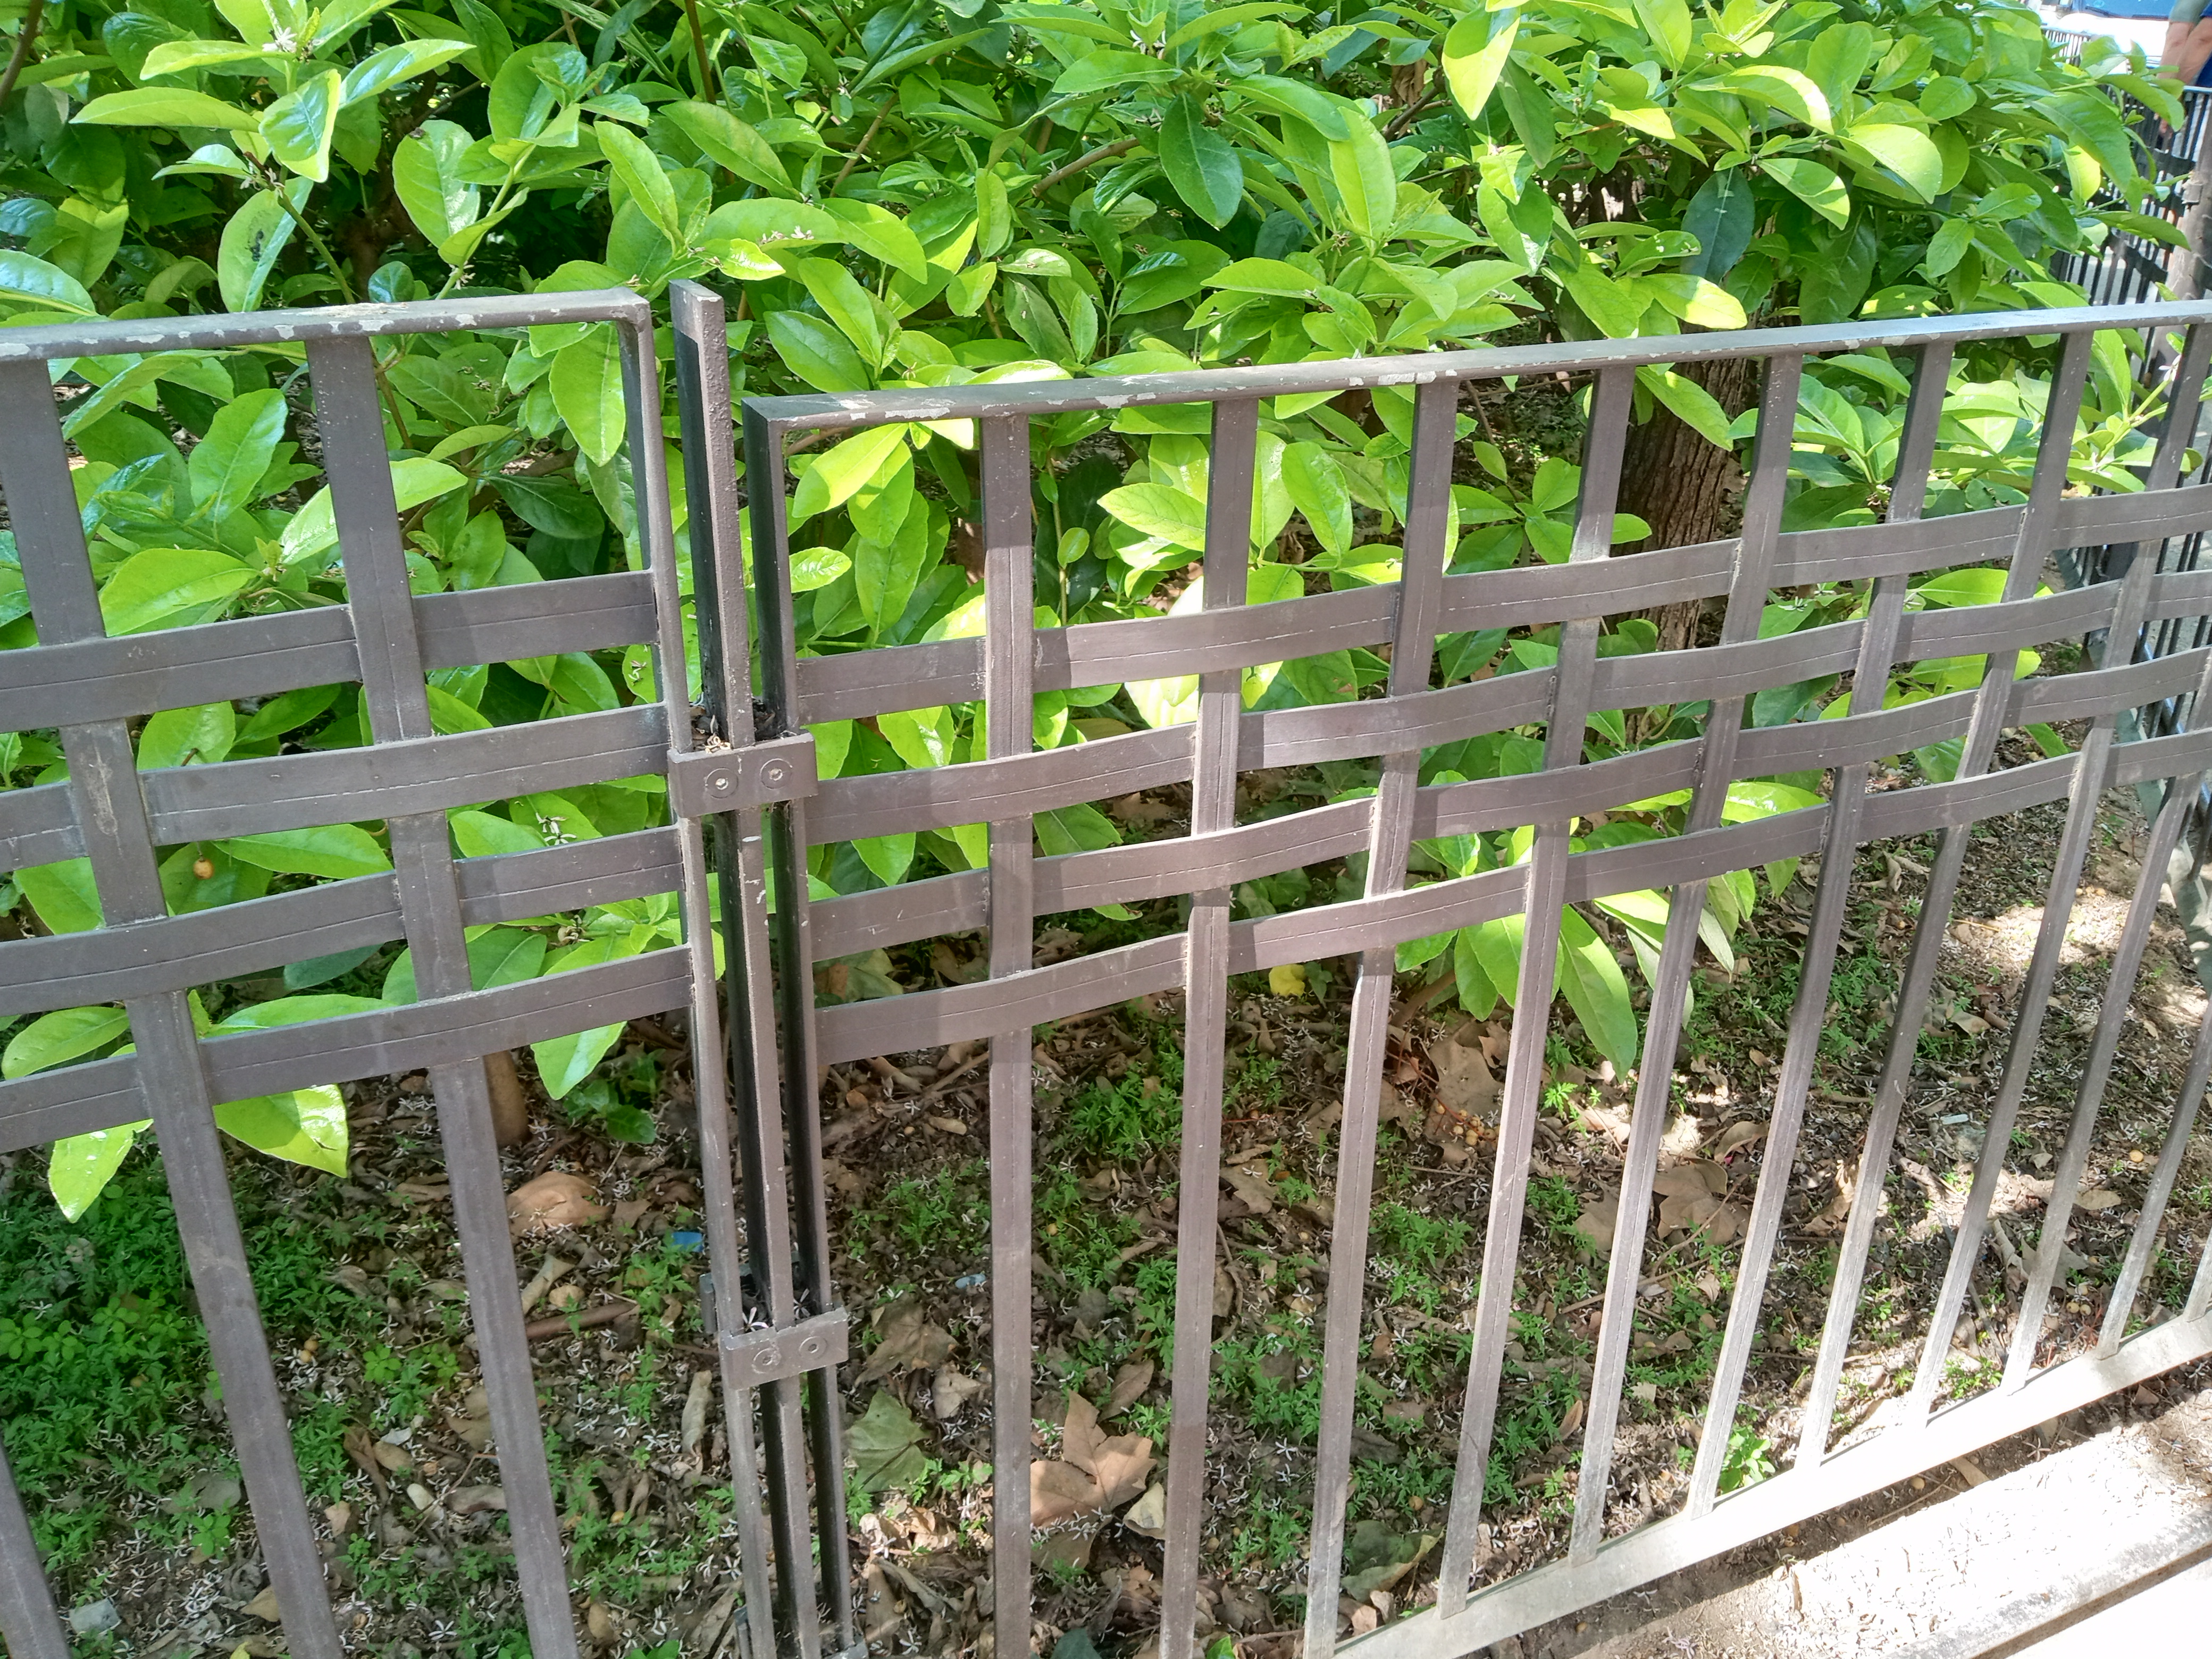 Fence at Sagrada Familia